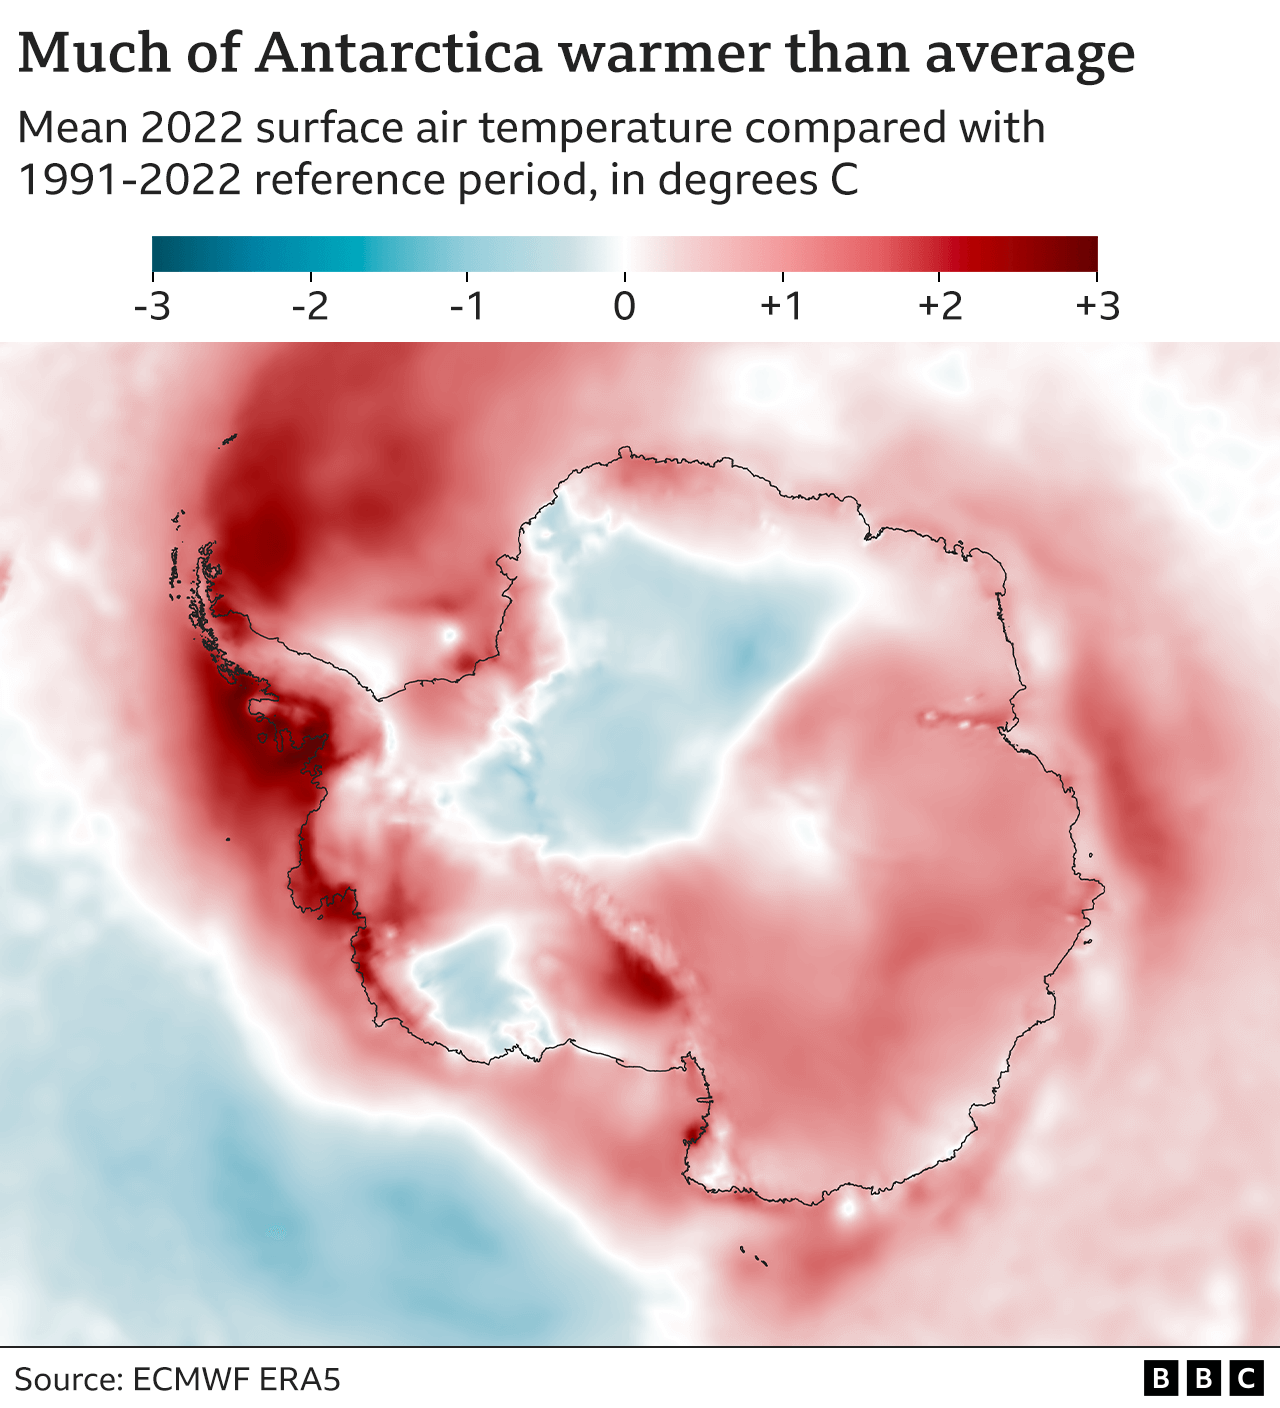 Karte der Antarktis mit Farbschattierung zur Darstellung der Differenz zwischen der durchschnittlichen Oberflächenlufttemperatur im Jahr 2022 und der Durchschnittstemperatur im Referenzzeitraum 1991-2020. Abgesehen von zwei kälteren blauen Flecken ist der Kontinent überwiegend rot - etwa 1 Grad über dem Durchschnitt. Gebiete über der Halbinsel sind dunkelrot und liegen bis zu 3 Grad über dem Durchschnitt.